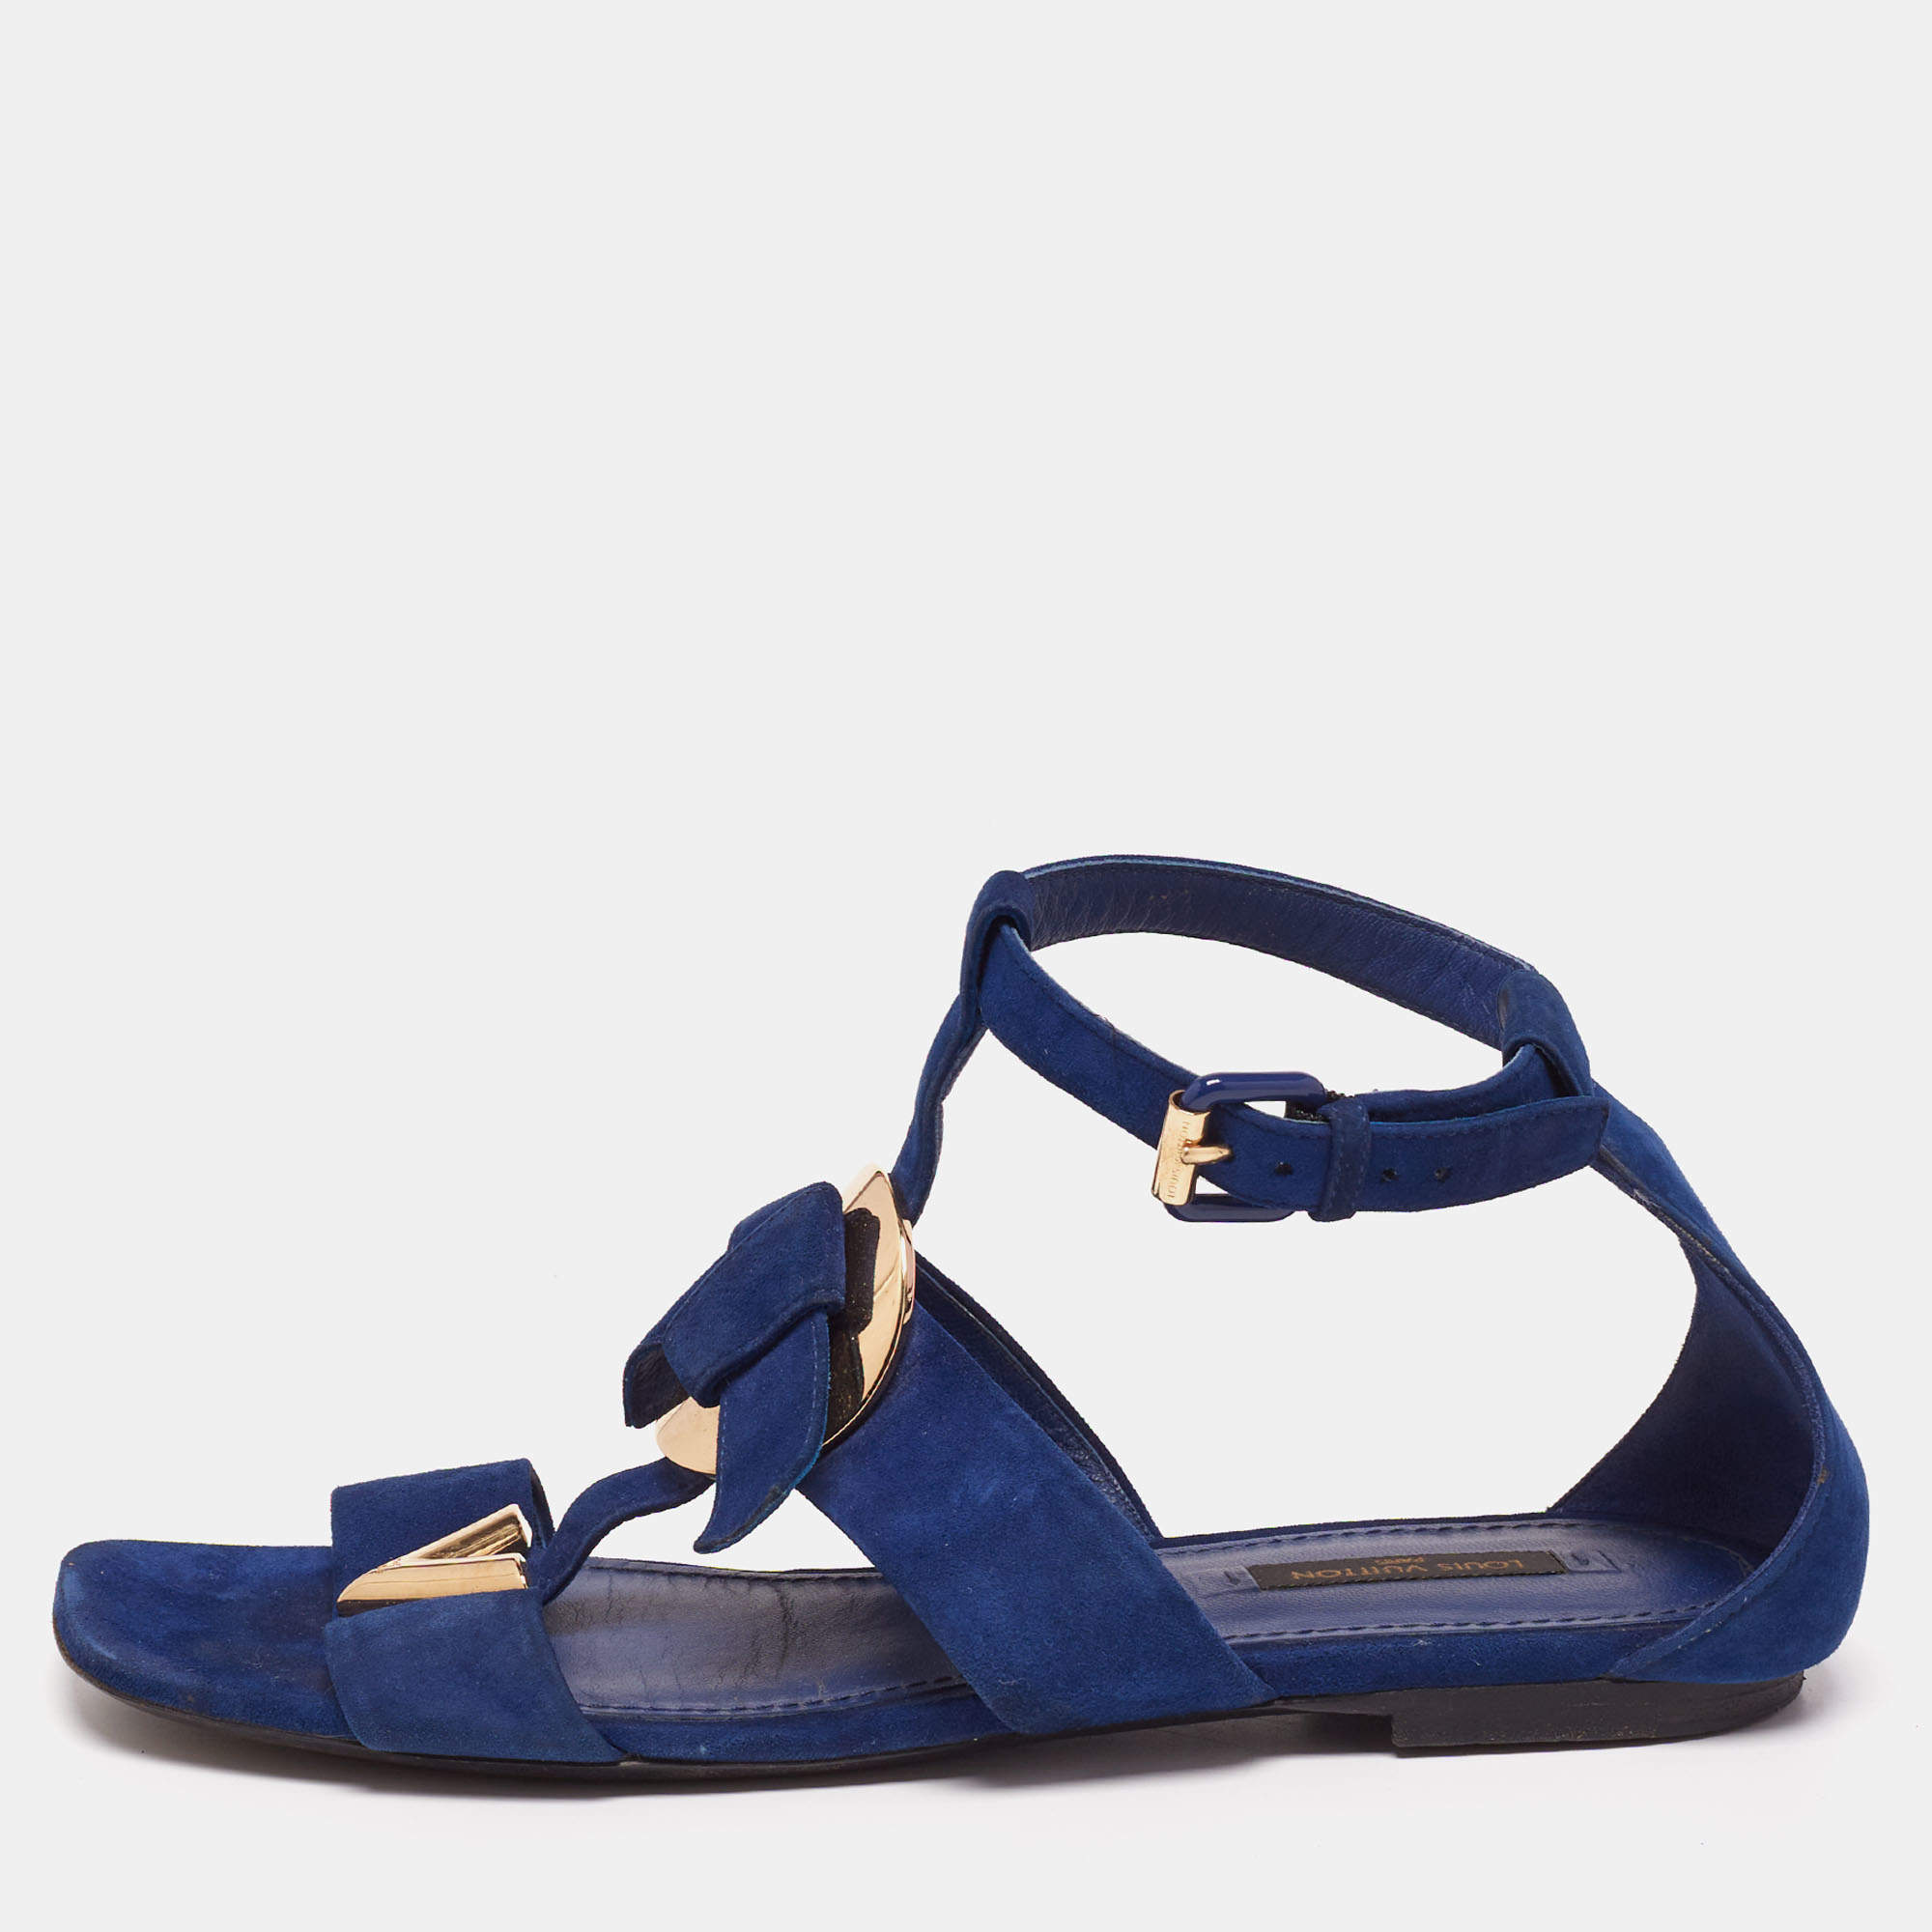 Louis Vuitton Blue Suede Flat Ankle-Strap Sandals Size 38 Louis Vuitton